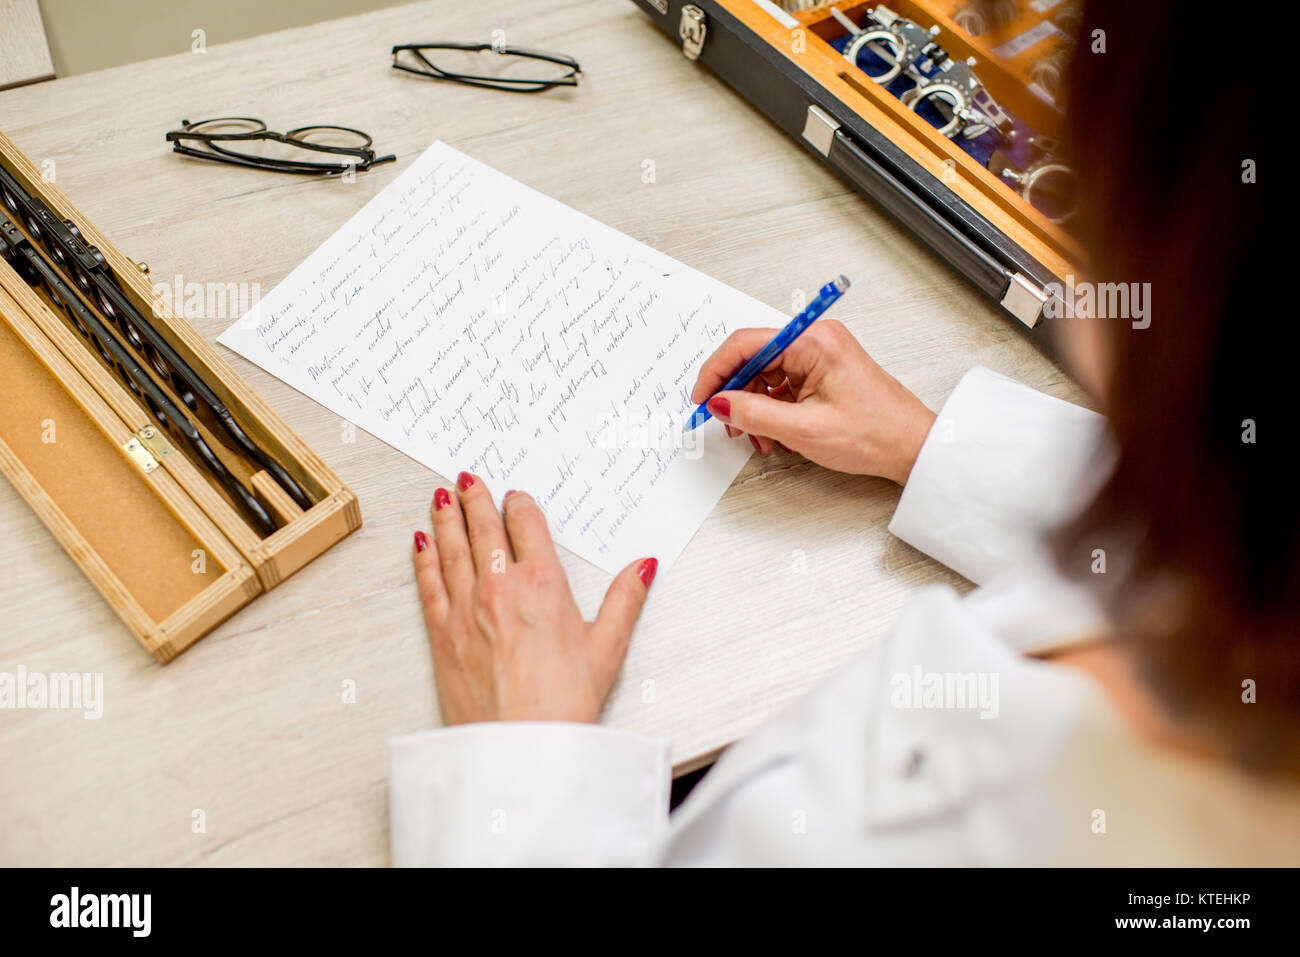 Senior augenarzt Schreiben von wissenschaftlichen Arbeiten auf dem Tisch mit Brillen und verschiedene Objektive Stockfoto